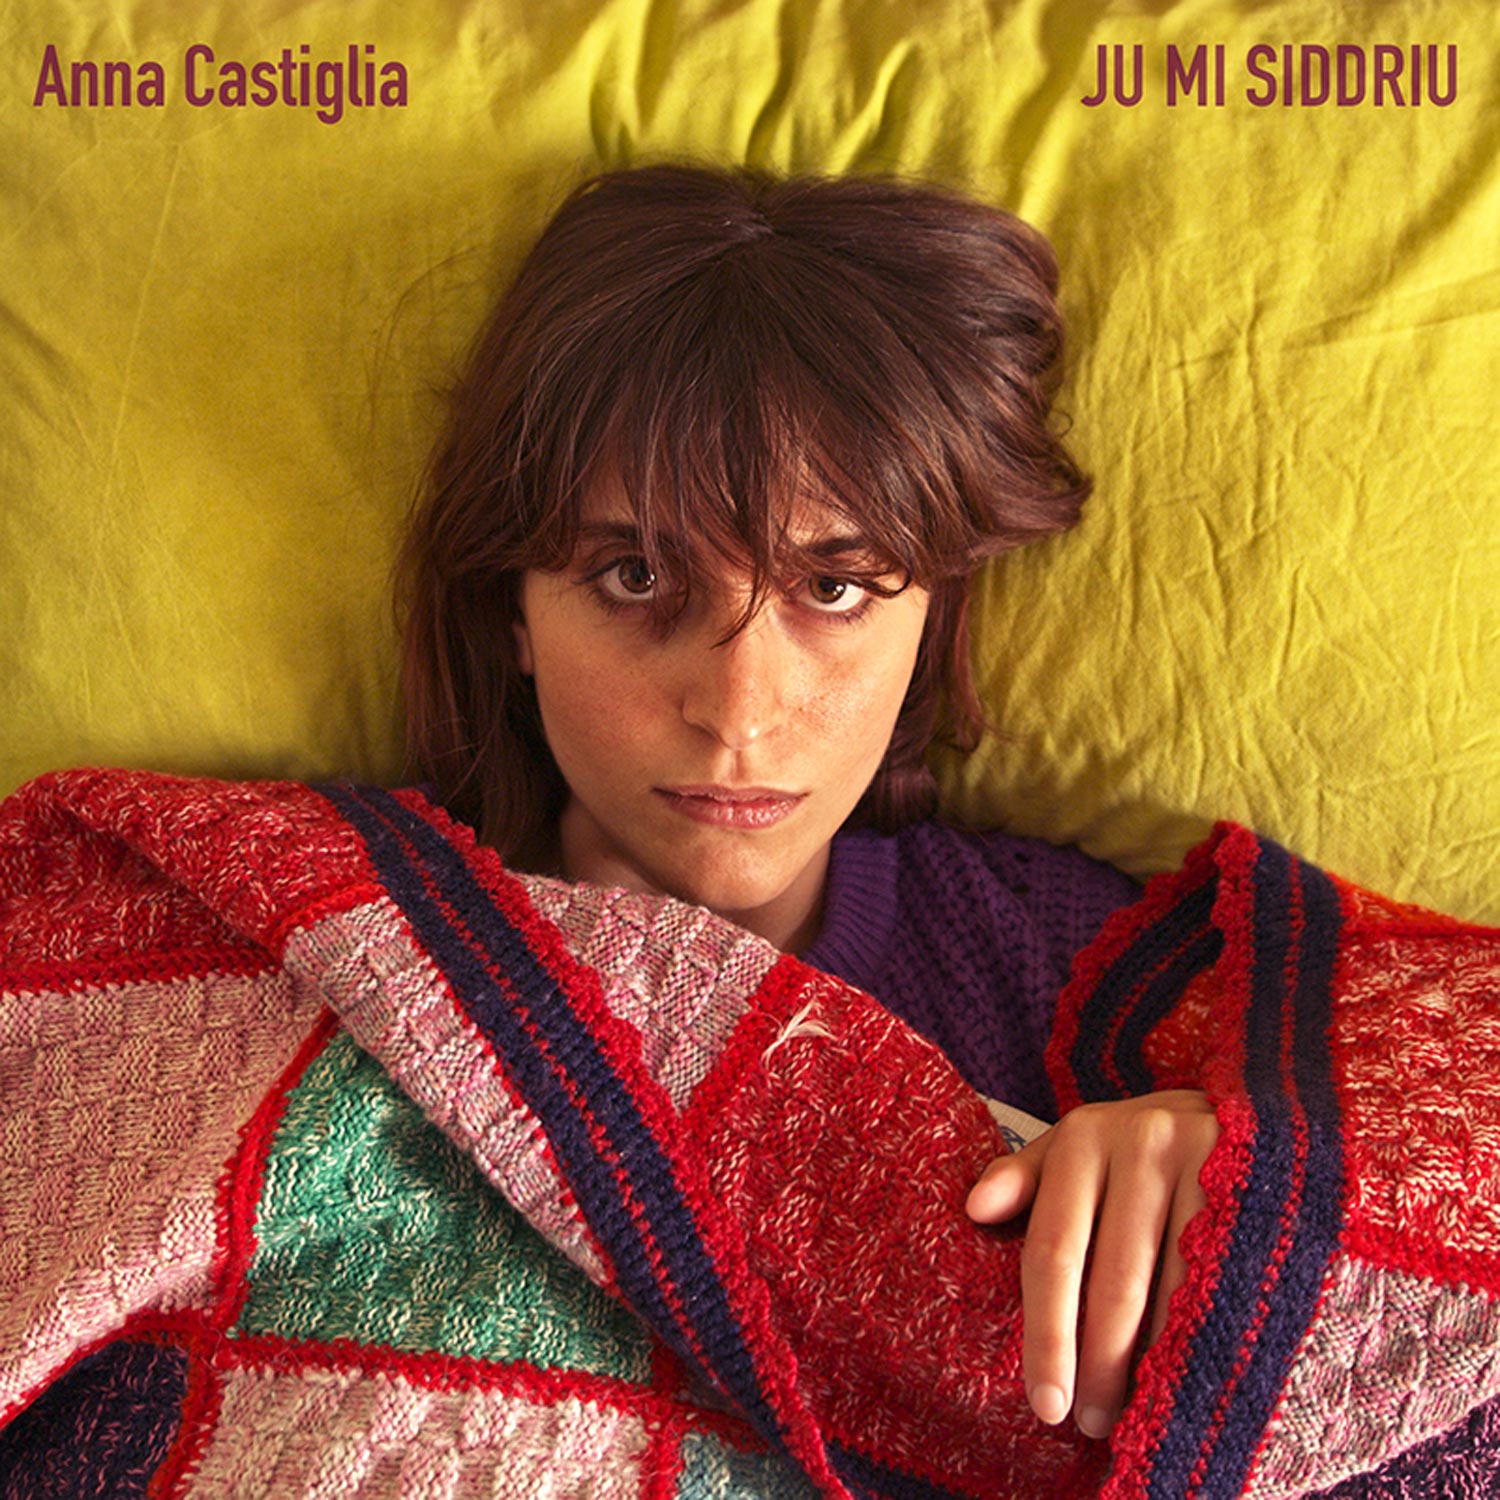 “Ju Mi Siddriu” è il titolo del nuovo singolo di Anna Castiglia